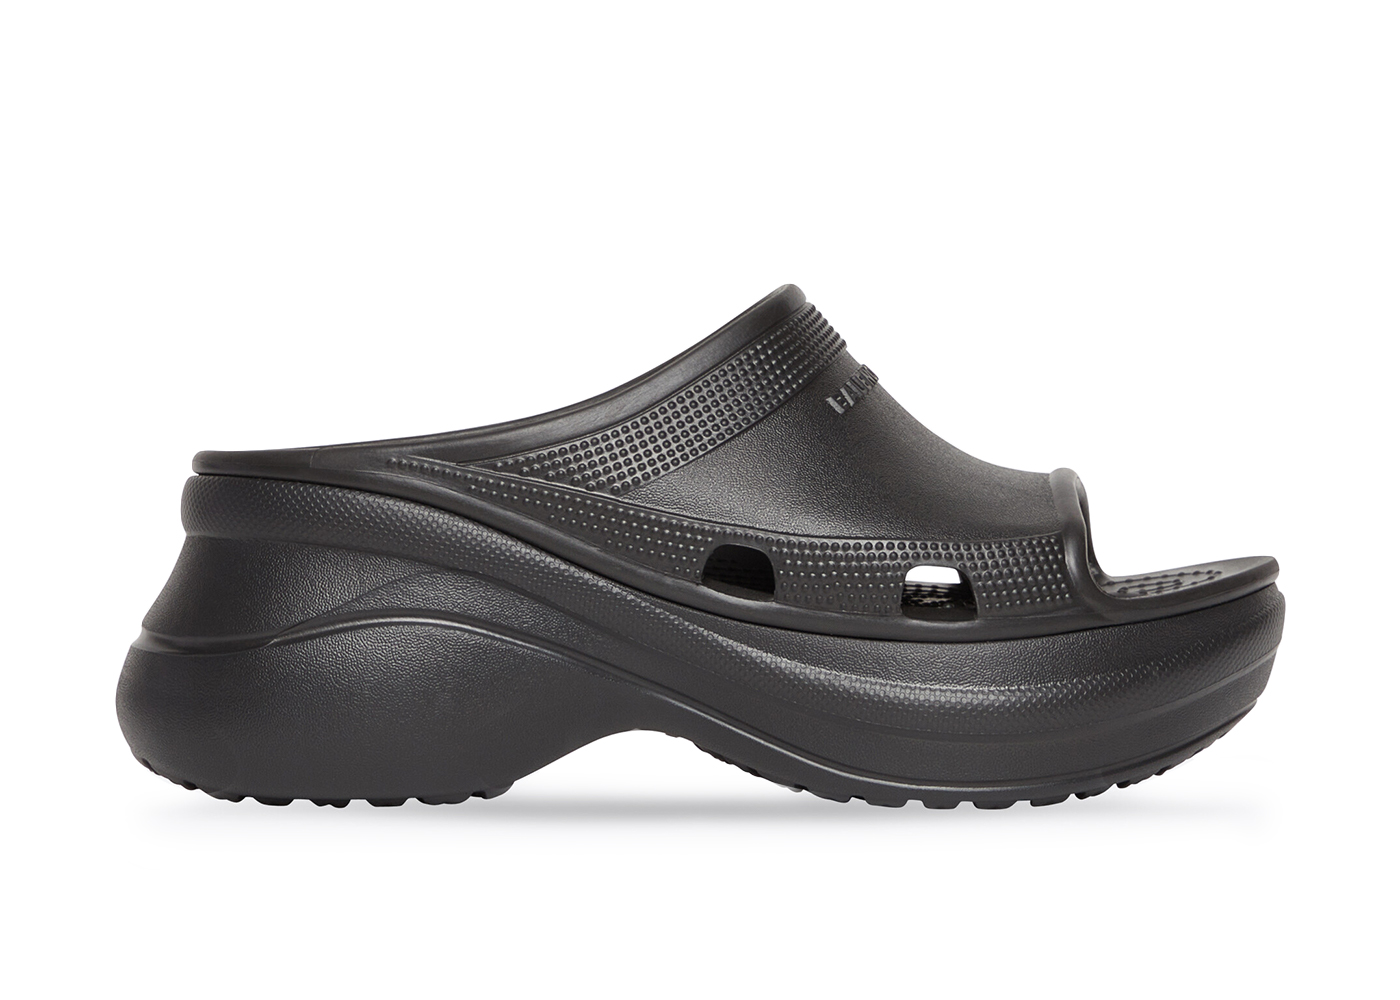 Balenciaga x Crocs Pool Slide Sandals Black Men's